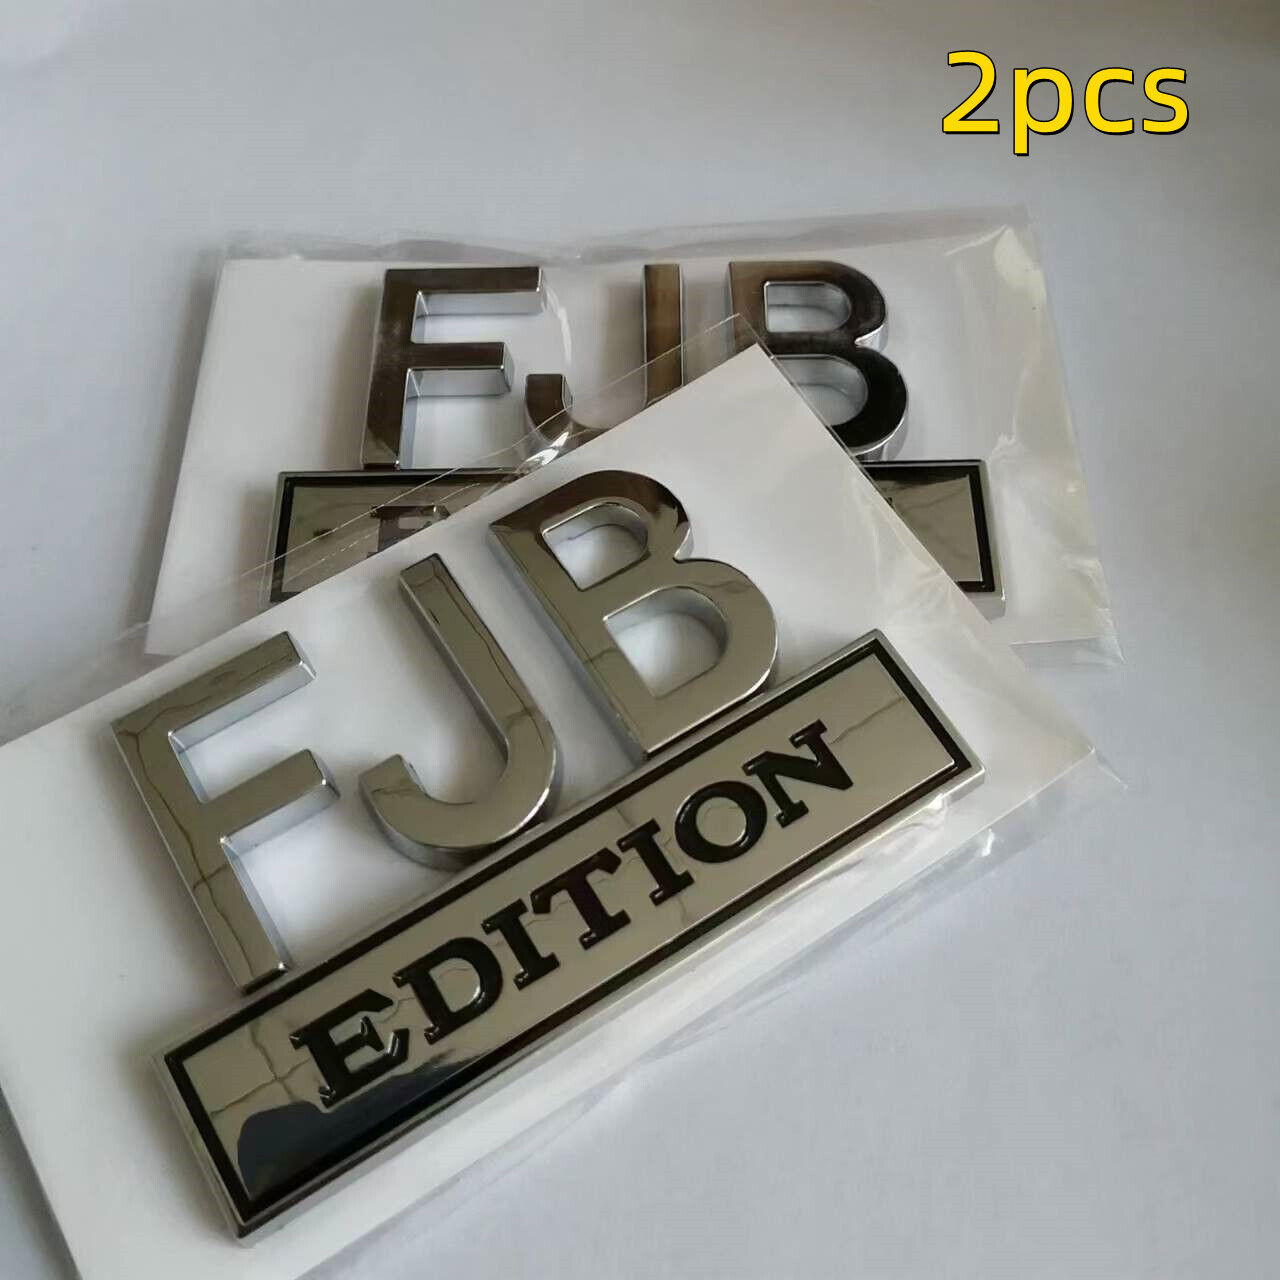 2PCS FJB Edition 3D Letters Emblem Badge Truck SUV Van Car Decal Bumper Sticker